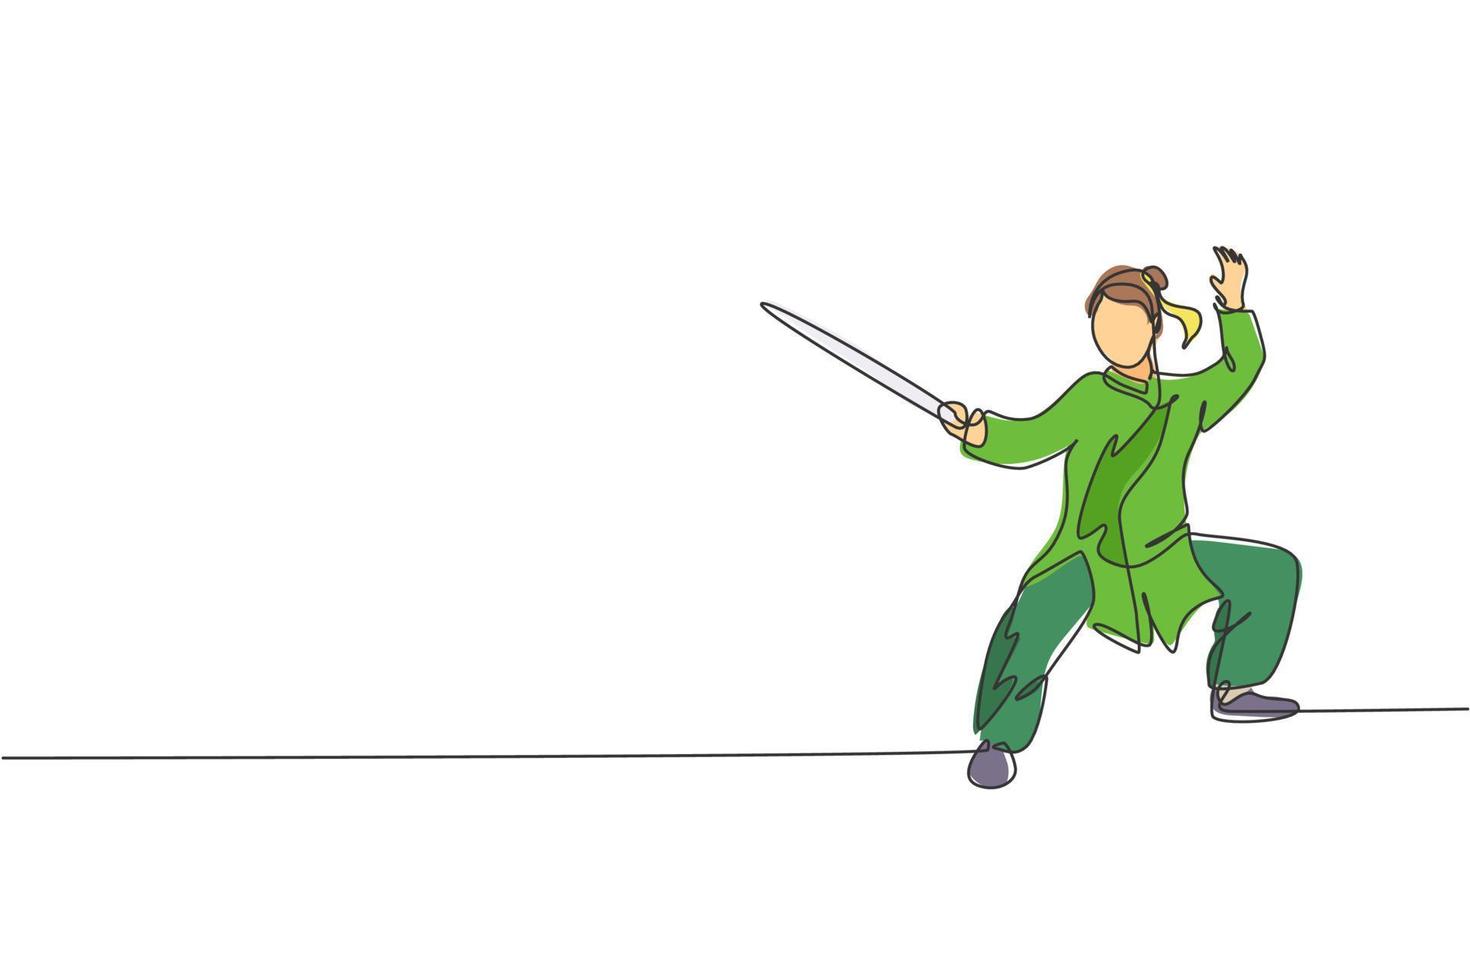 enda kontinuerlig linjeteckning av ung kvinna wushu fighter, kung fu mästare i uniform träning med svärd på dojo center. slåss tävling koncept. trendiga en rad rita design vektorillustration vektor